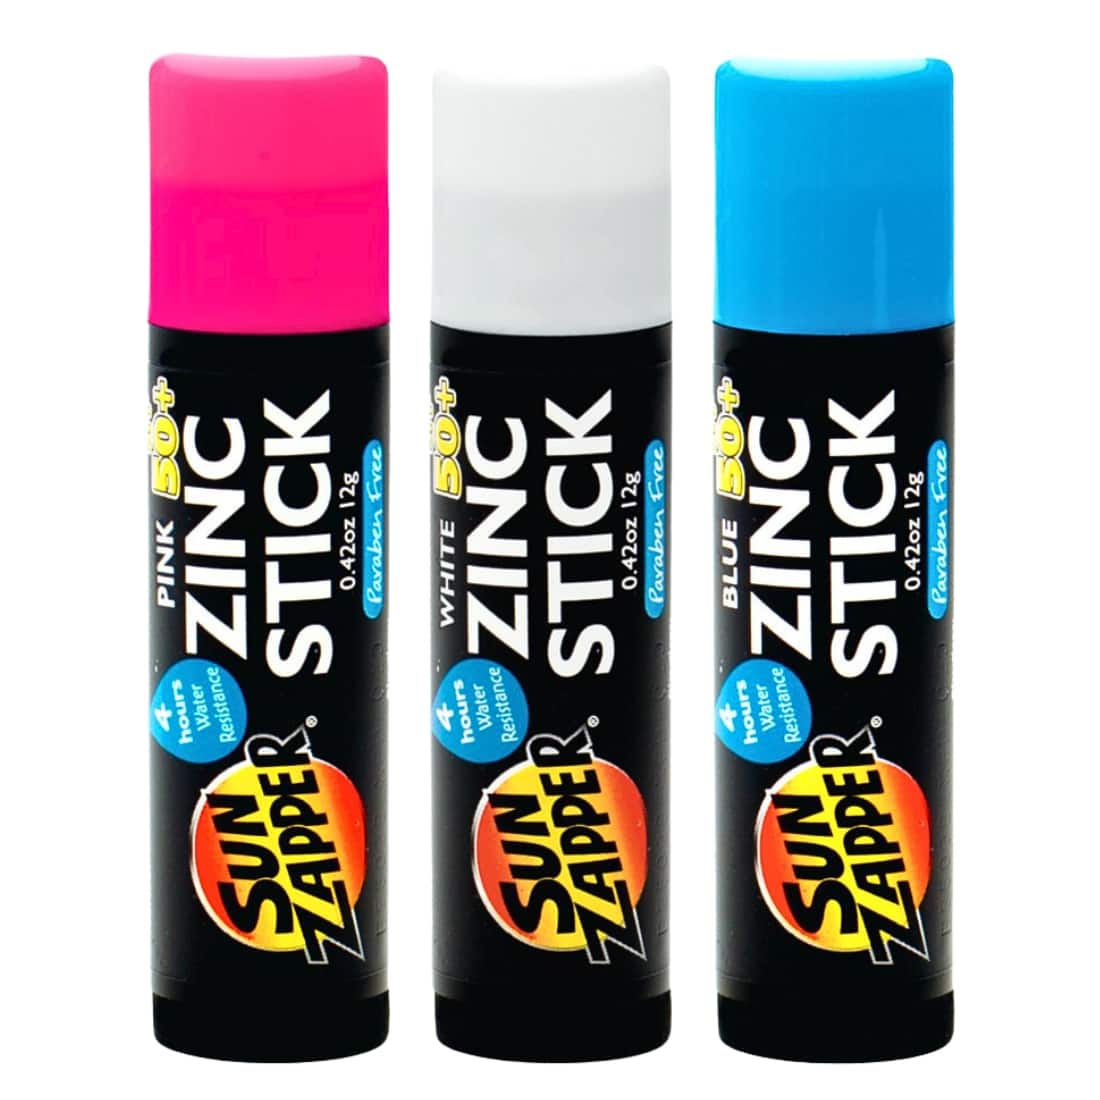 Sun Zapper Coloured Spf 50+ Zinc Stick 3 Pack - Pink/White/Blue - Sunscreen by Sun Zapper 3x12g